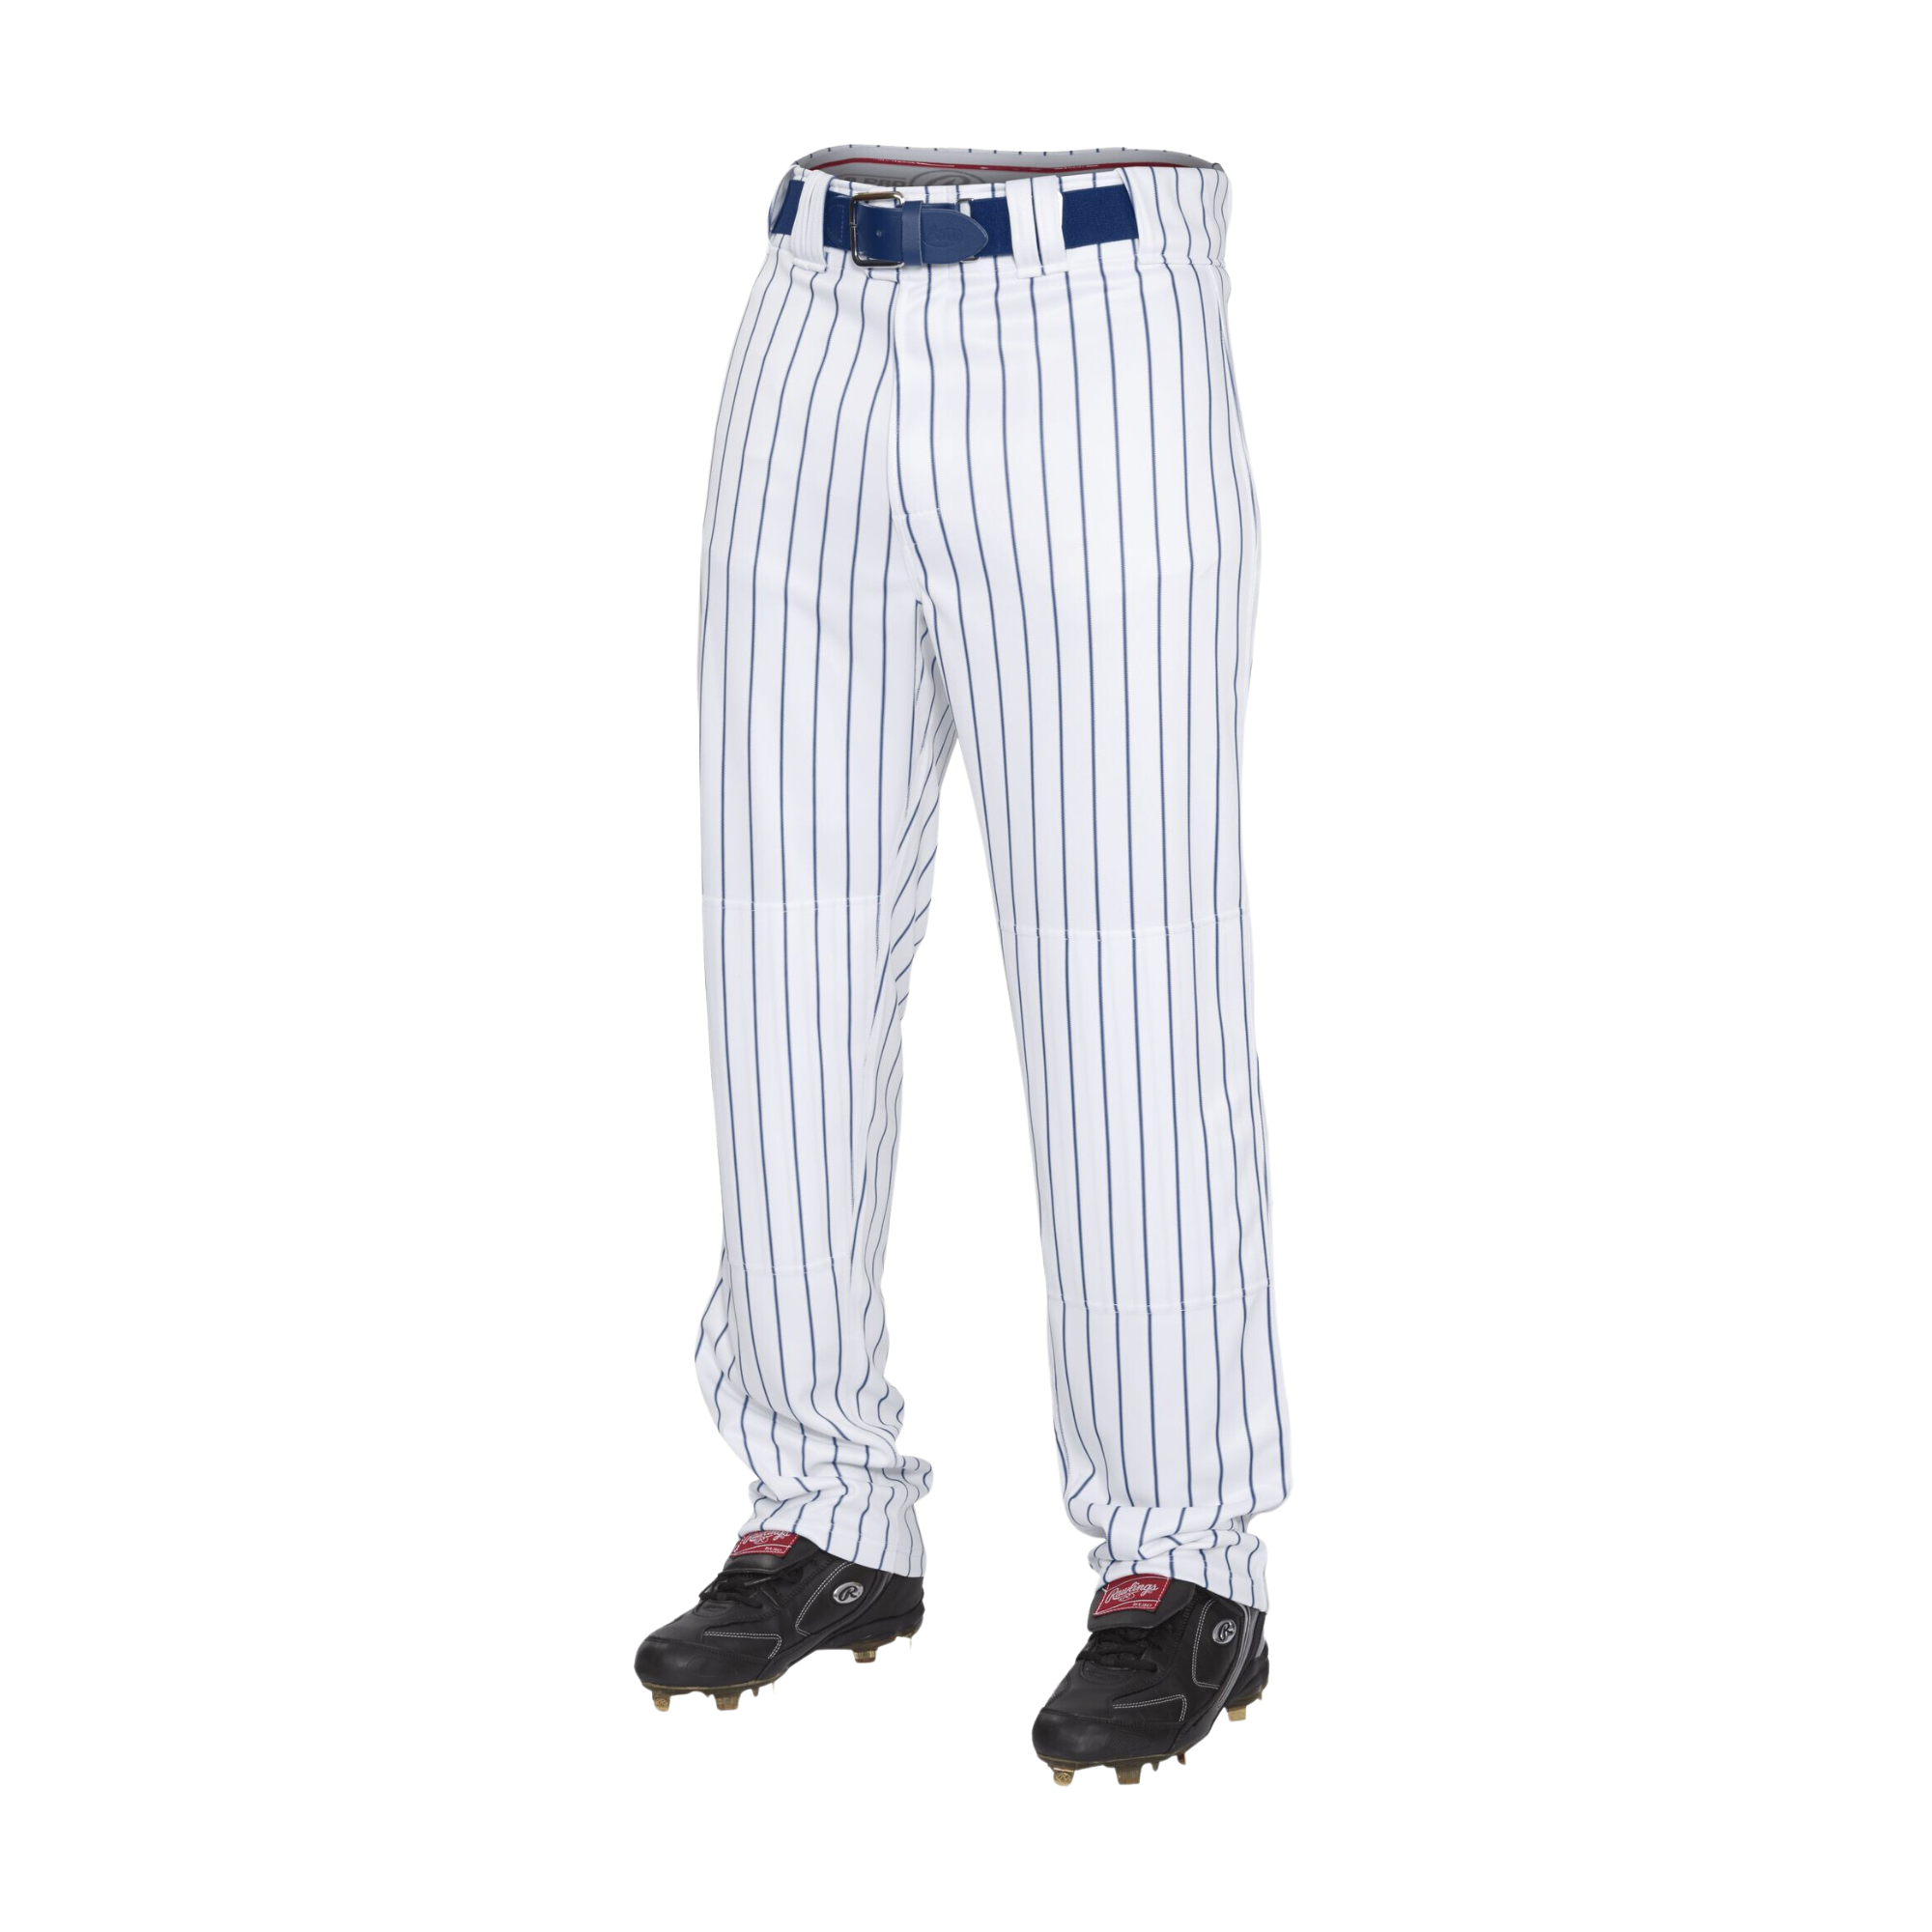 Rawlings Men's 150 Jogger Baseball Pants